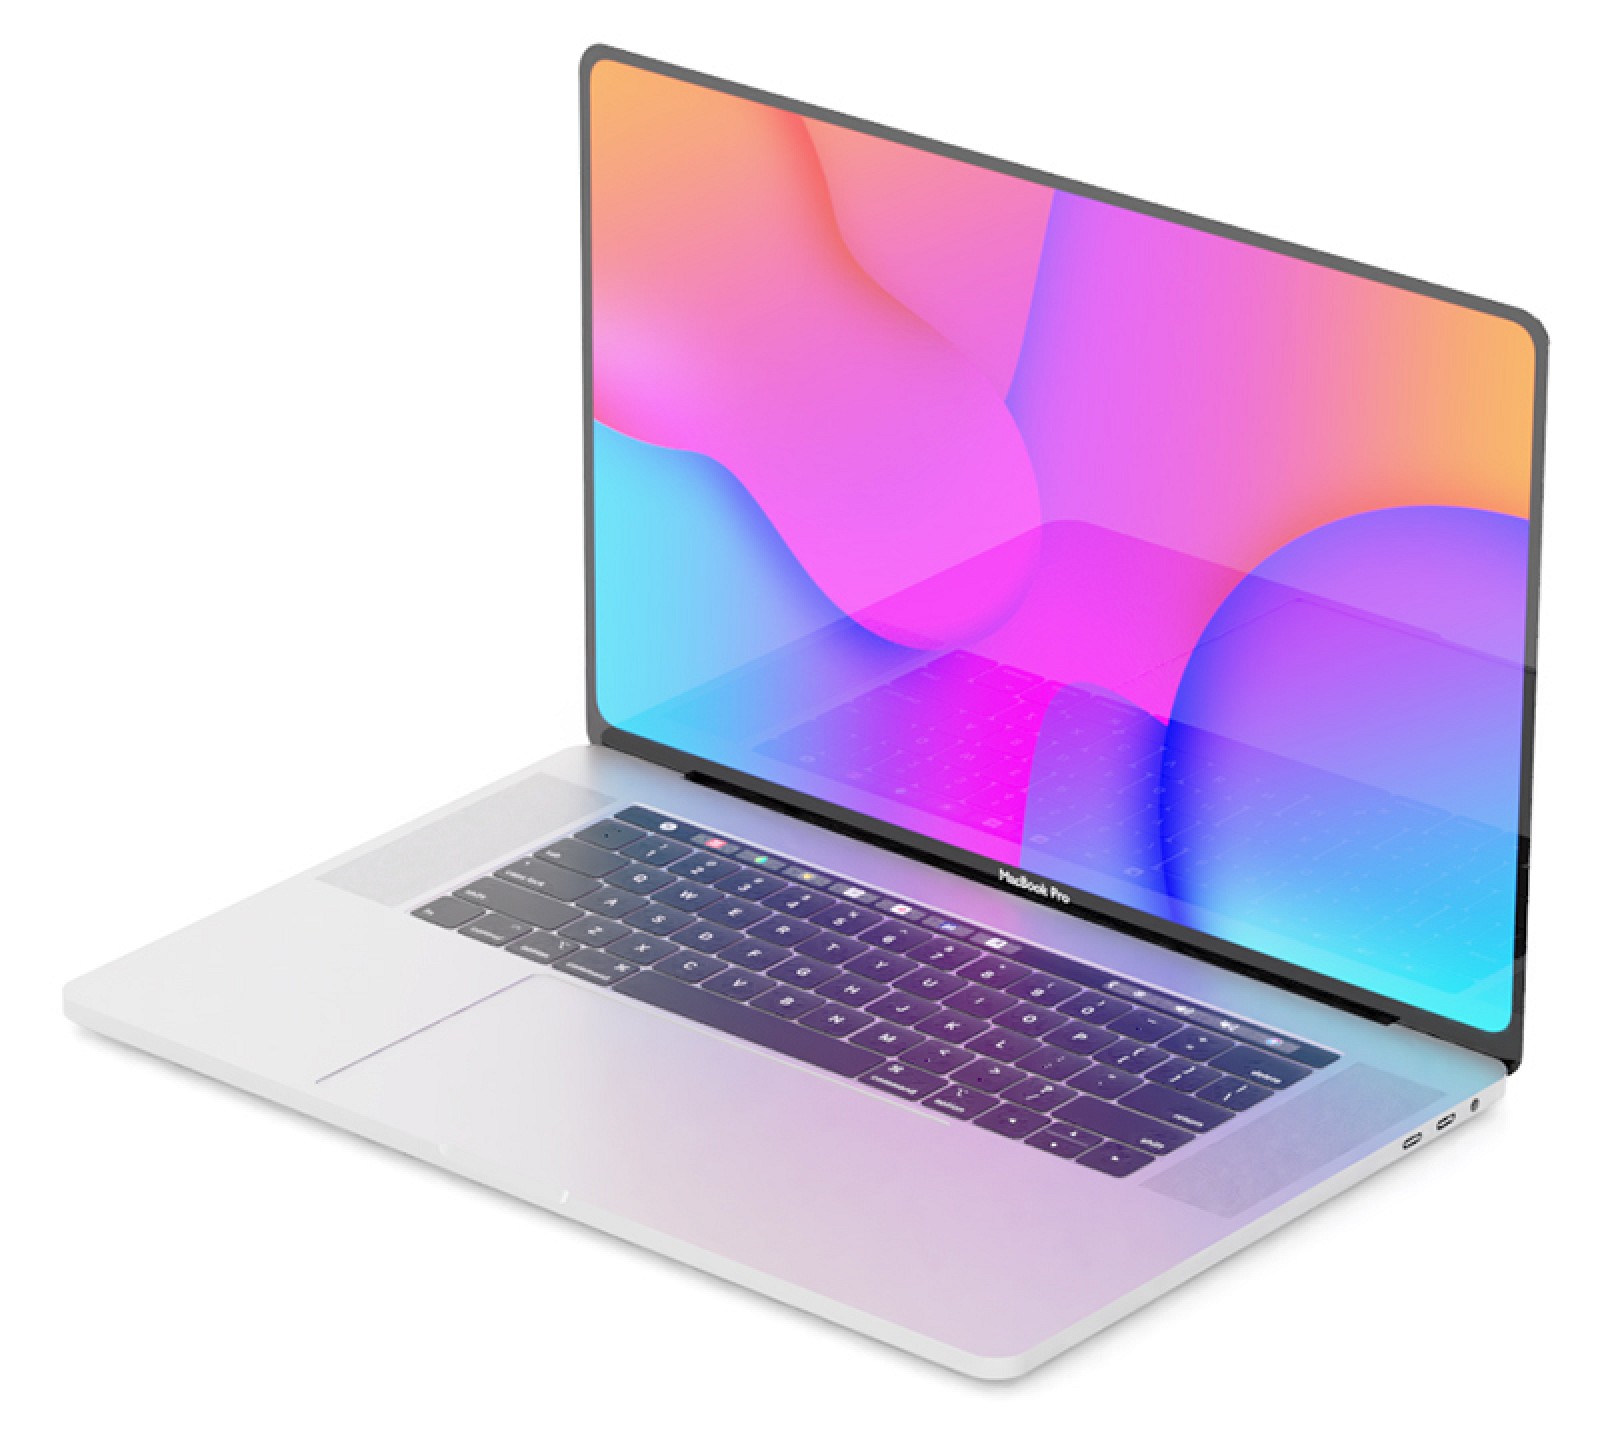 La NRRA de Corea certifica el MacBook Pro con el número de modelo 'A2159' [Updated]